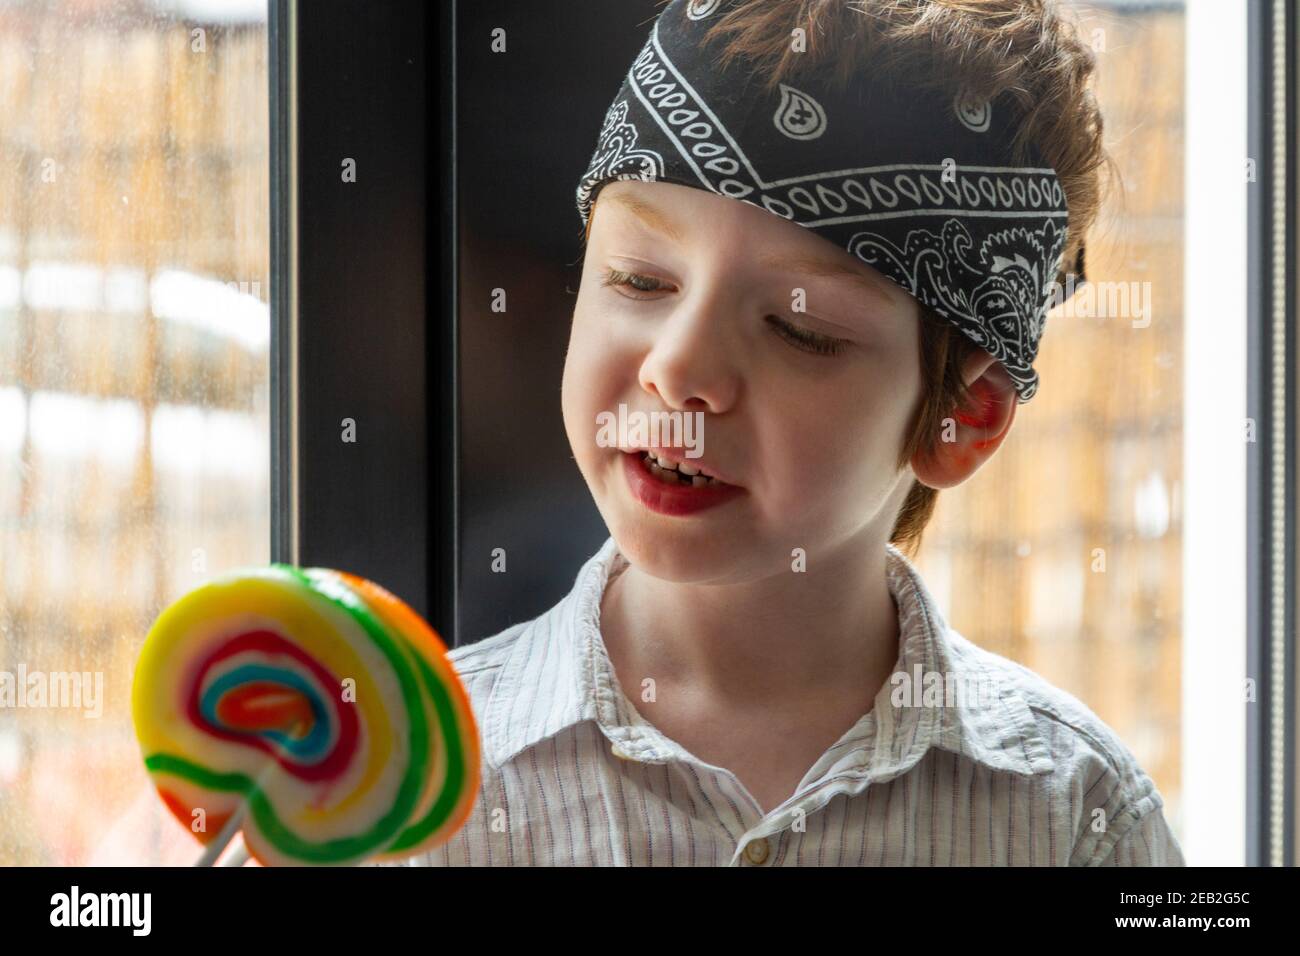 Portrait d'un adorable garçon aux cheveux rouges, aux yeux bleus, regardant un lollipop coloré près d'une fenêtre Banque D'Images